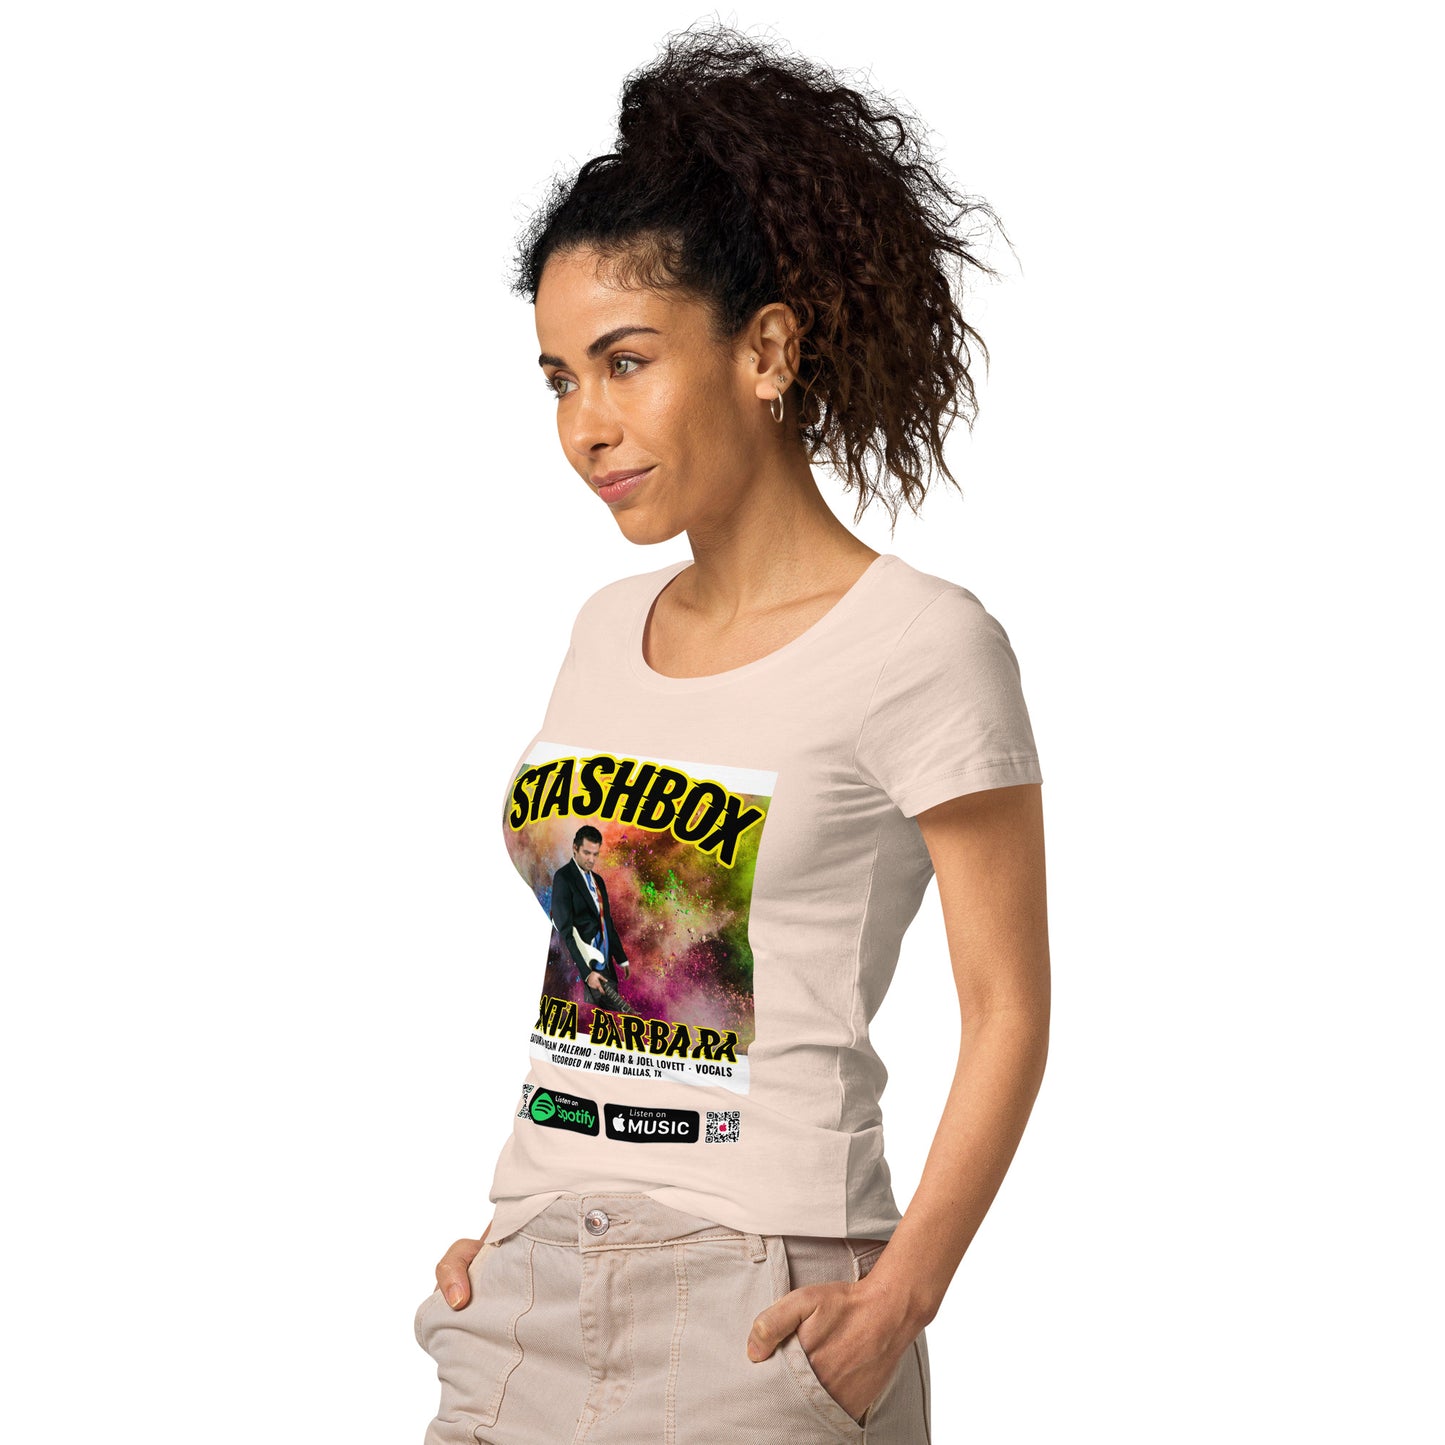 Women’s Basic Organic T-Shirt Santa Barbara Stashbox 025